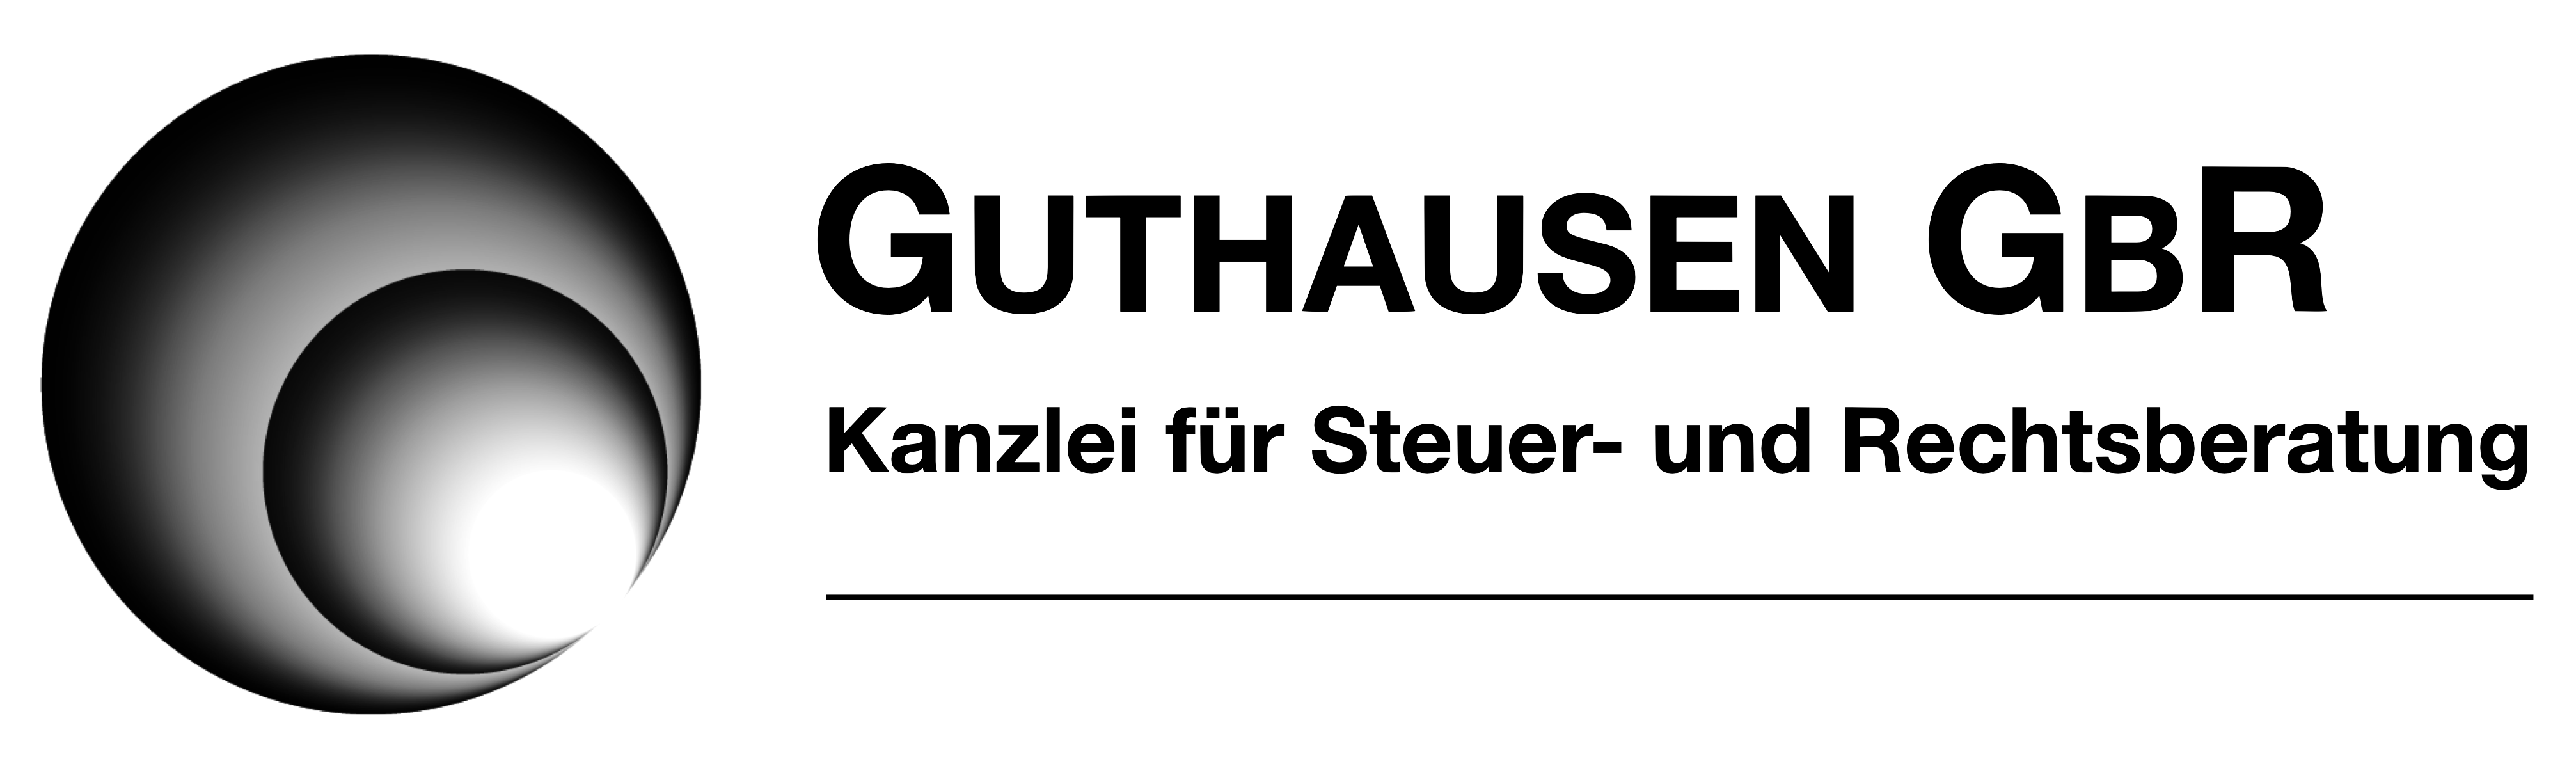 Guthausen GbR - Kanzlei für Steuer- und Rechtsberatung